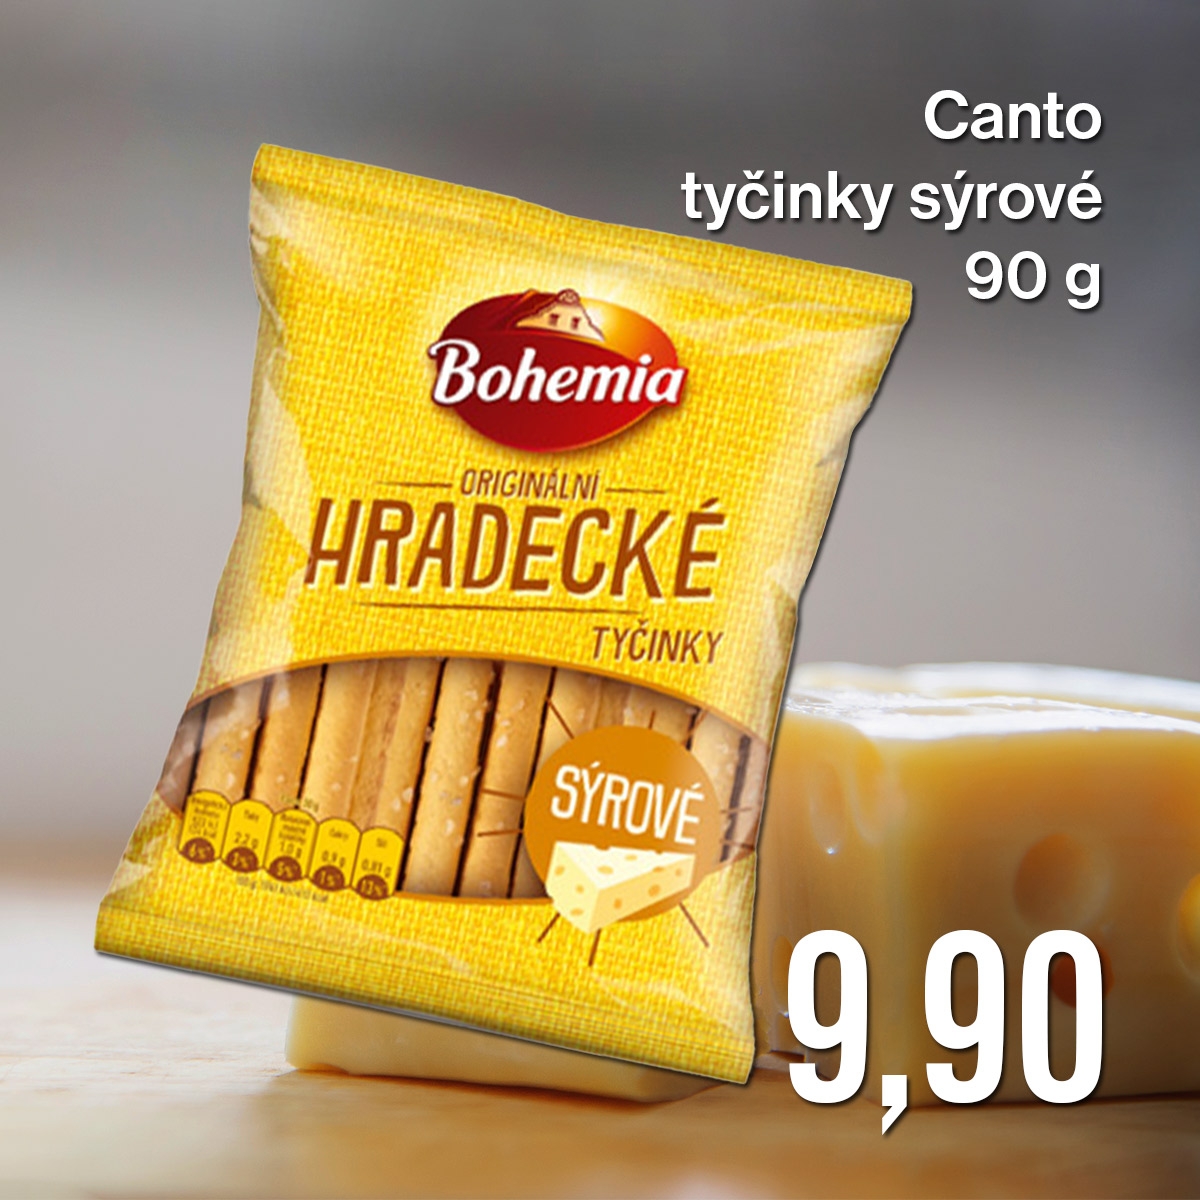 Canto tyčinky sýrové 90 g